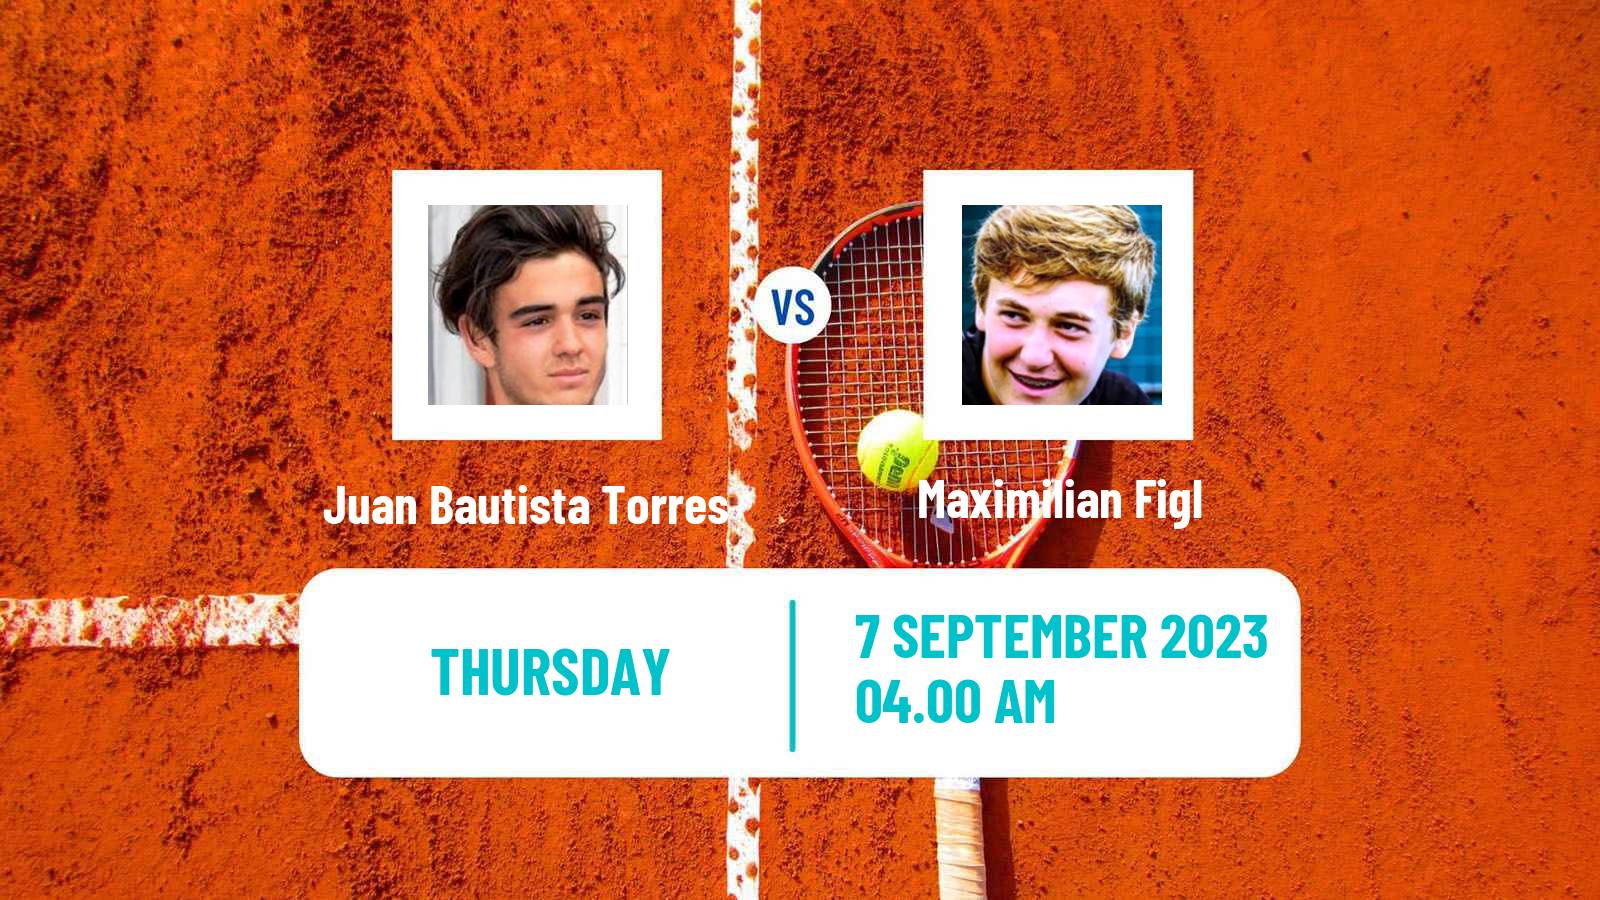 Tennis ITF M25 MarIBOr 2 Men Juan Bautista Torres - Maximilian Figl